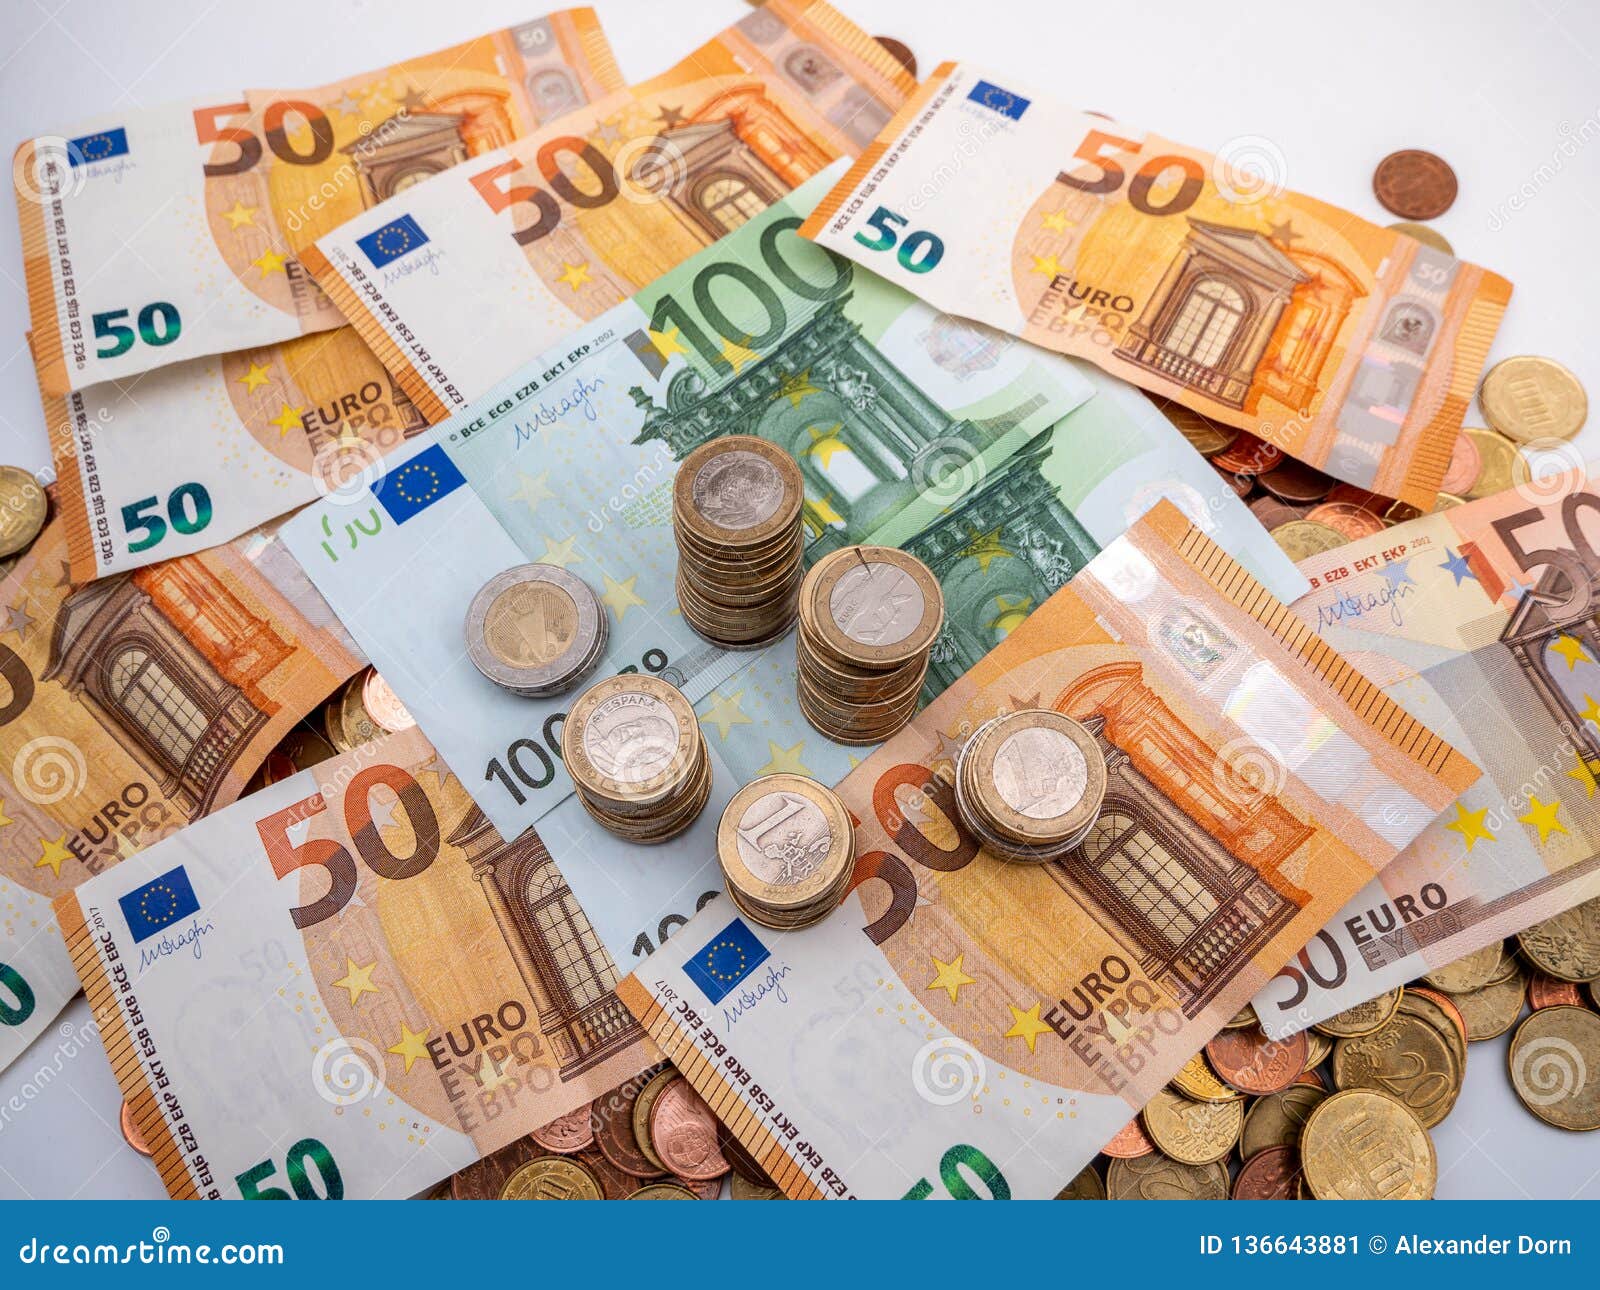 L Image De L Euro Argent Dans Les Pieces Et Les Billets Se Ferment Image Stock Image Du Commerce Bancaire